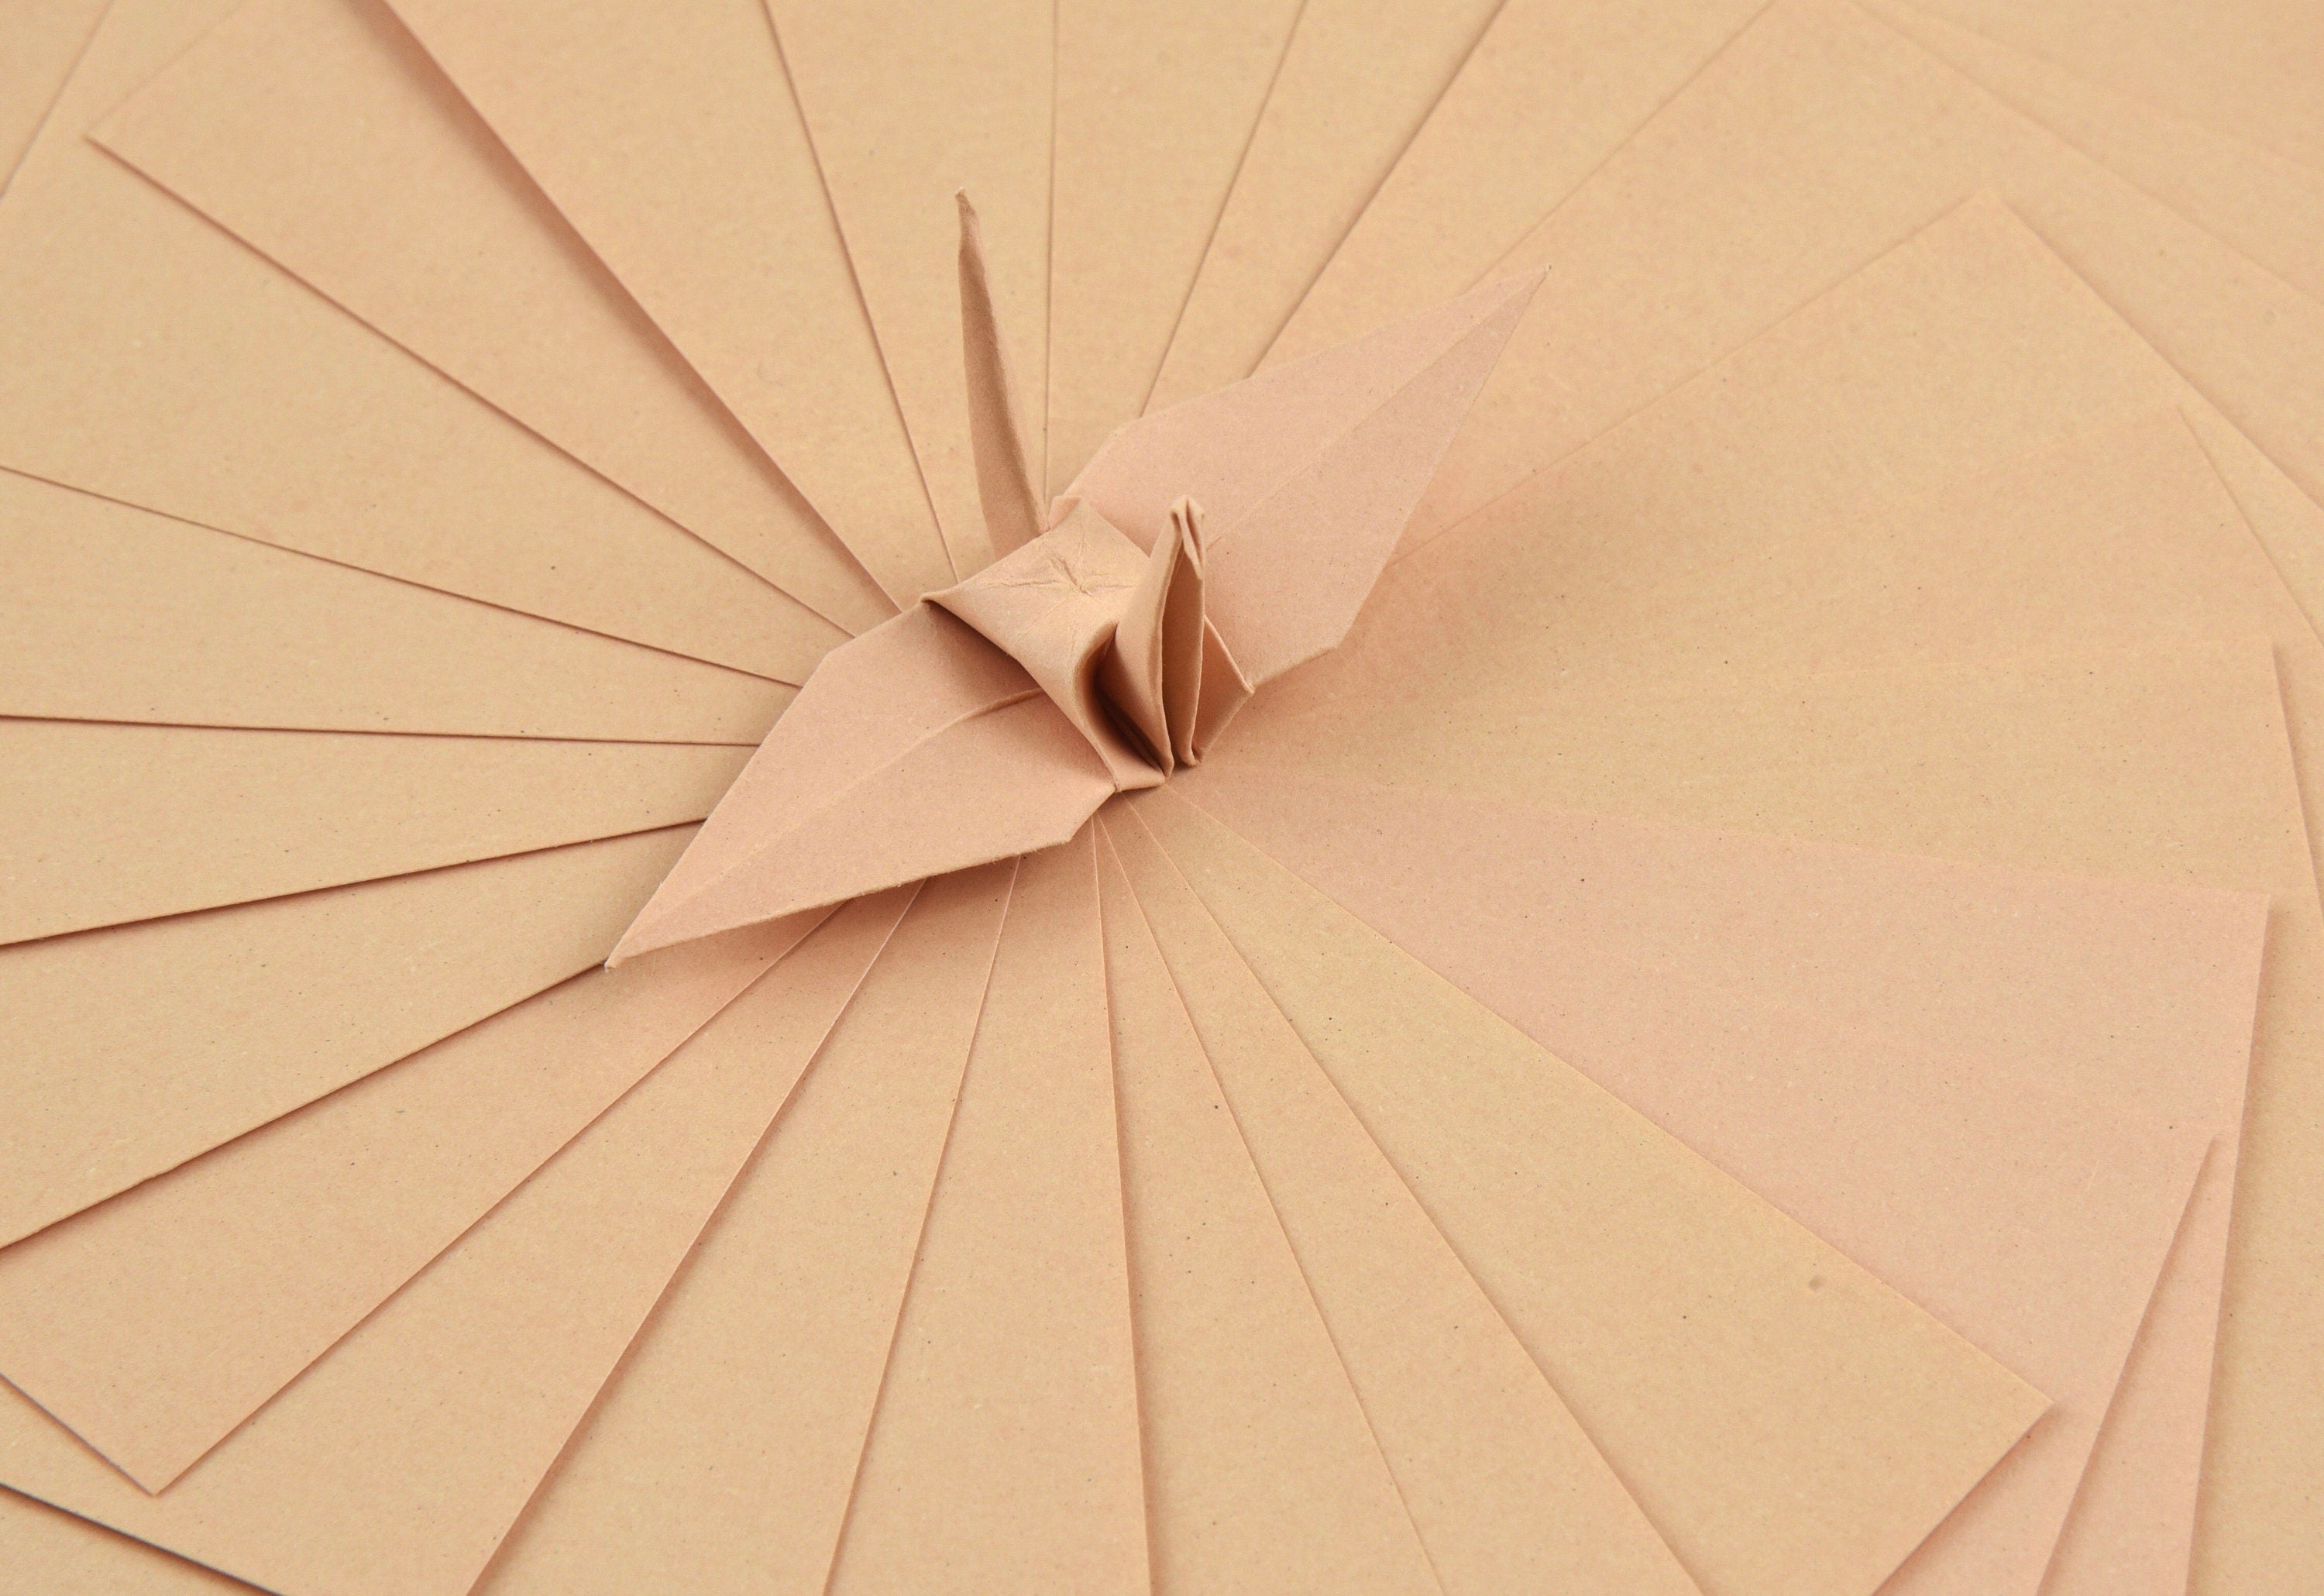 100 hojas de papel base para origami - 6x6 pulgadas - Paquete de papel cuadrado para plegado, grullas de origami y decoración - S02